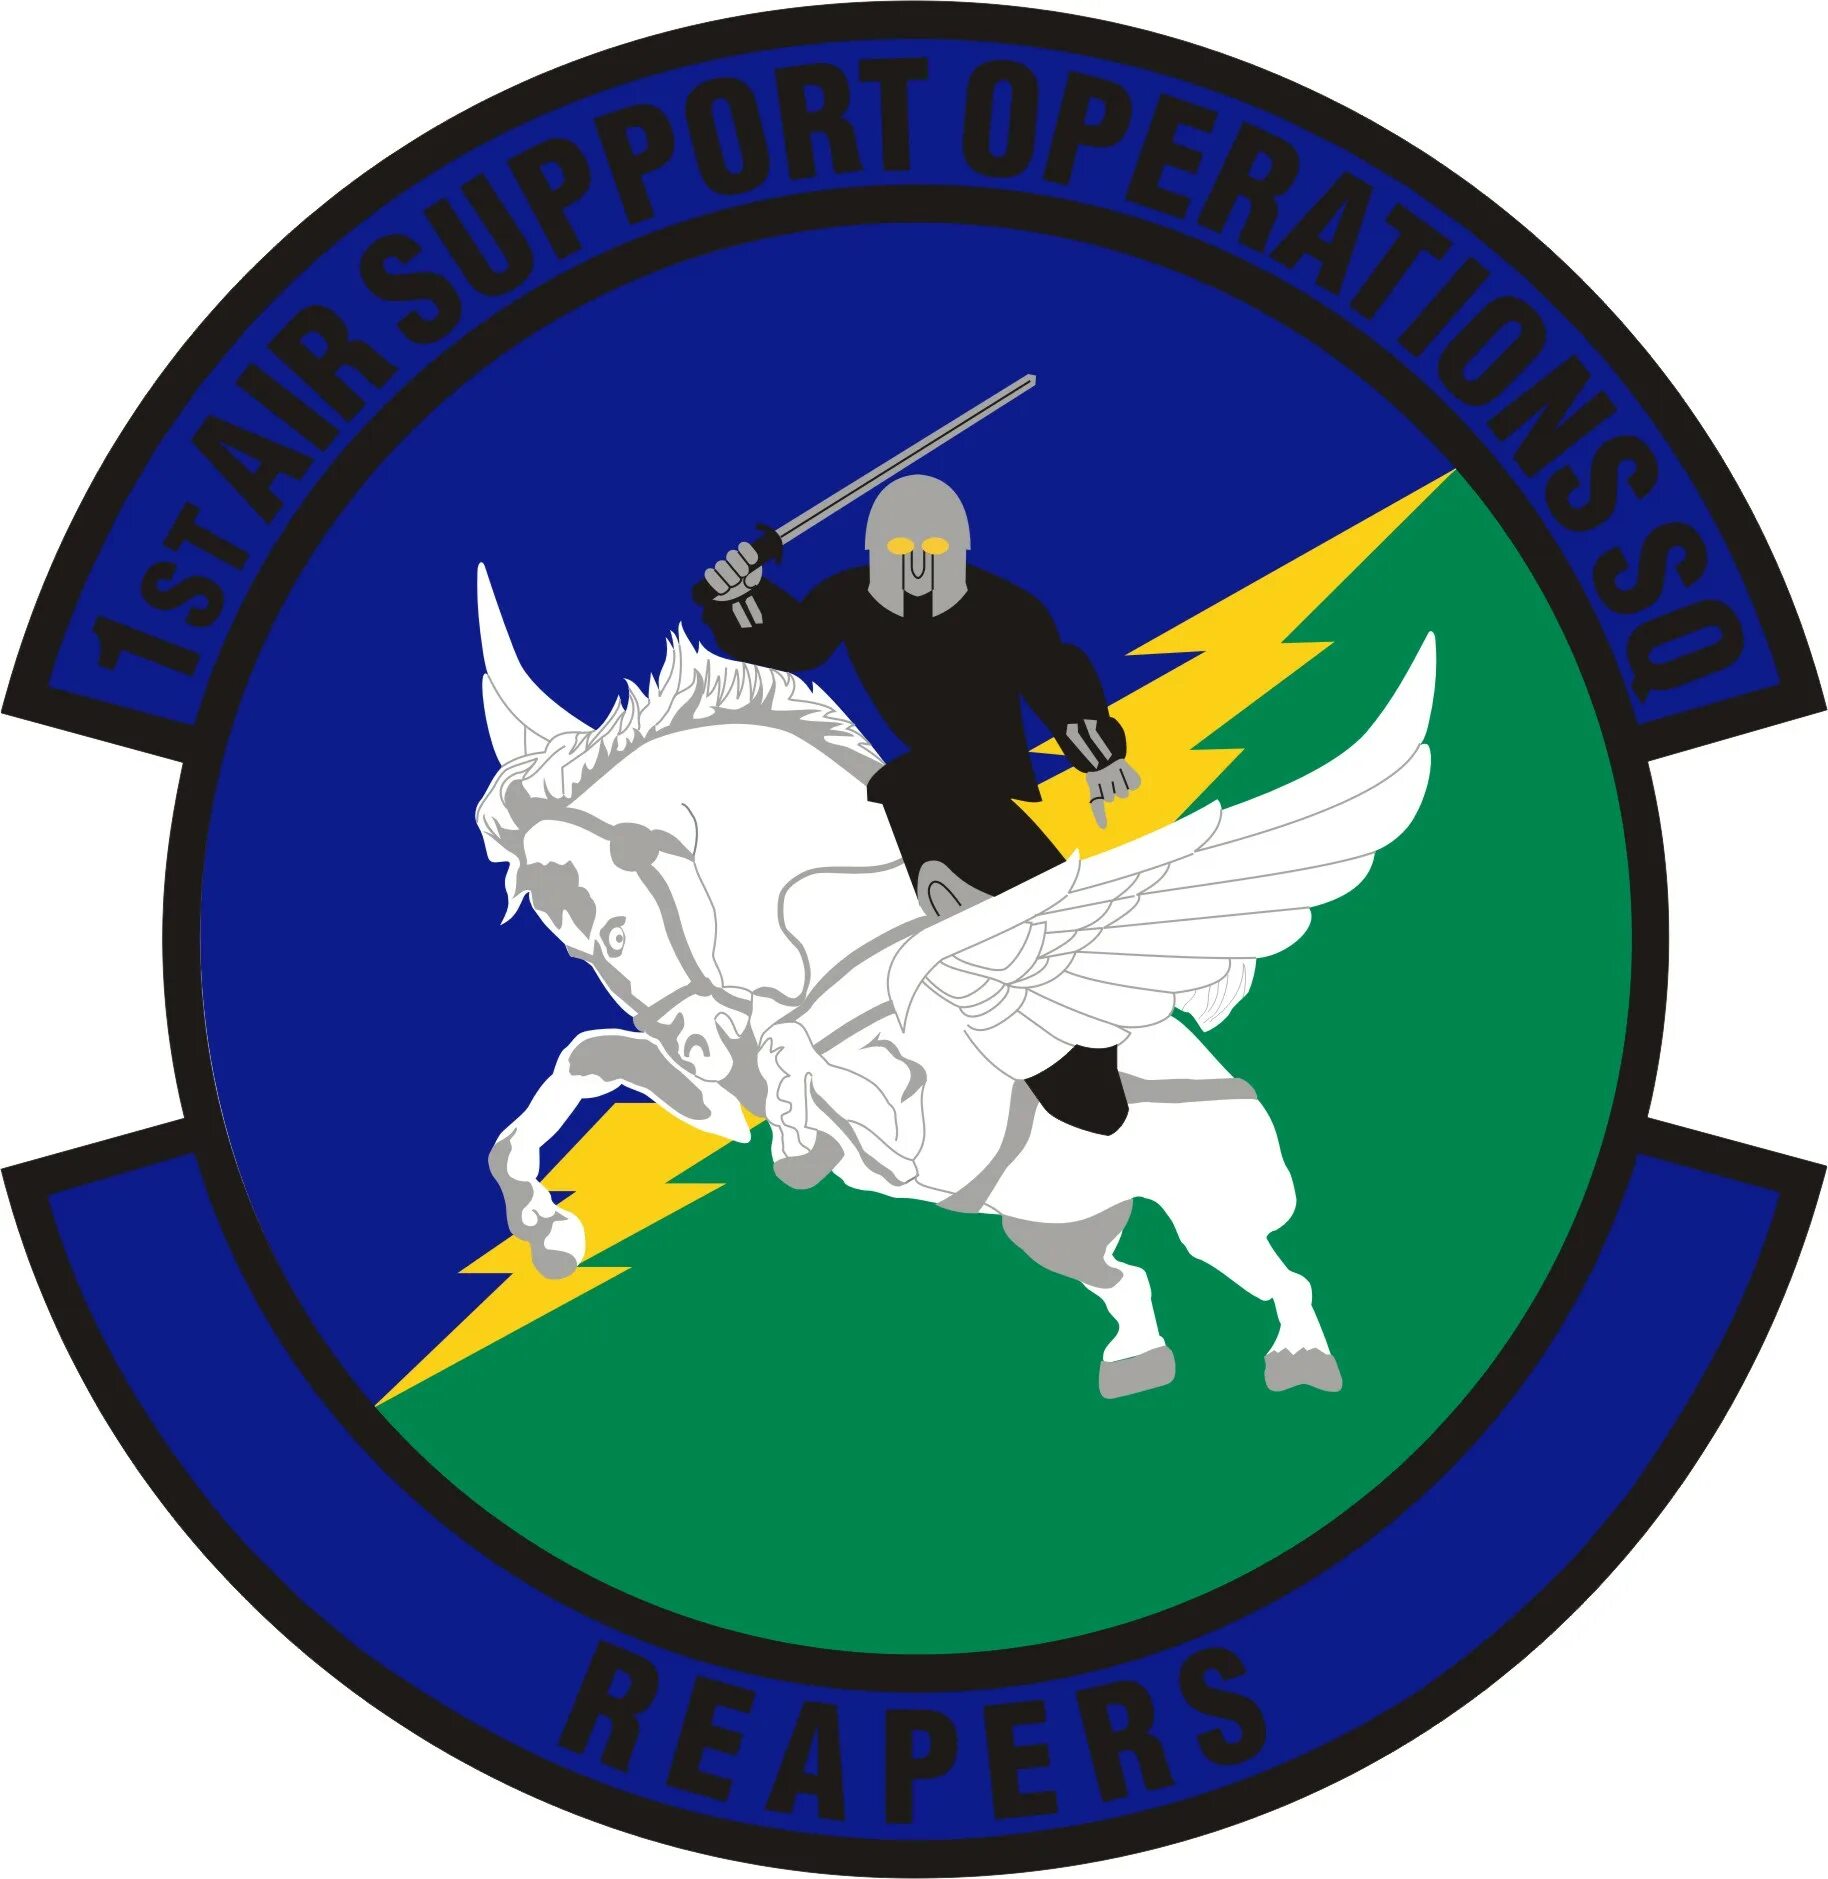 Air support. Флаг эскадрильи. Air support Division LSPD. Эмблемы авиационных эскадрилий США. LAPD Air support Division.